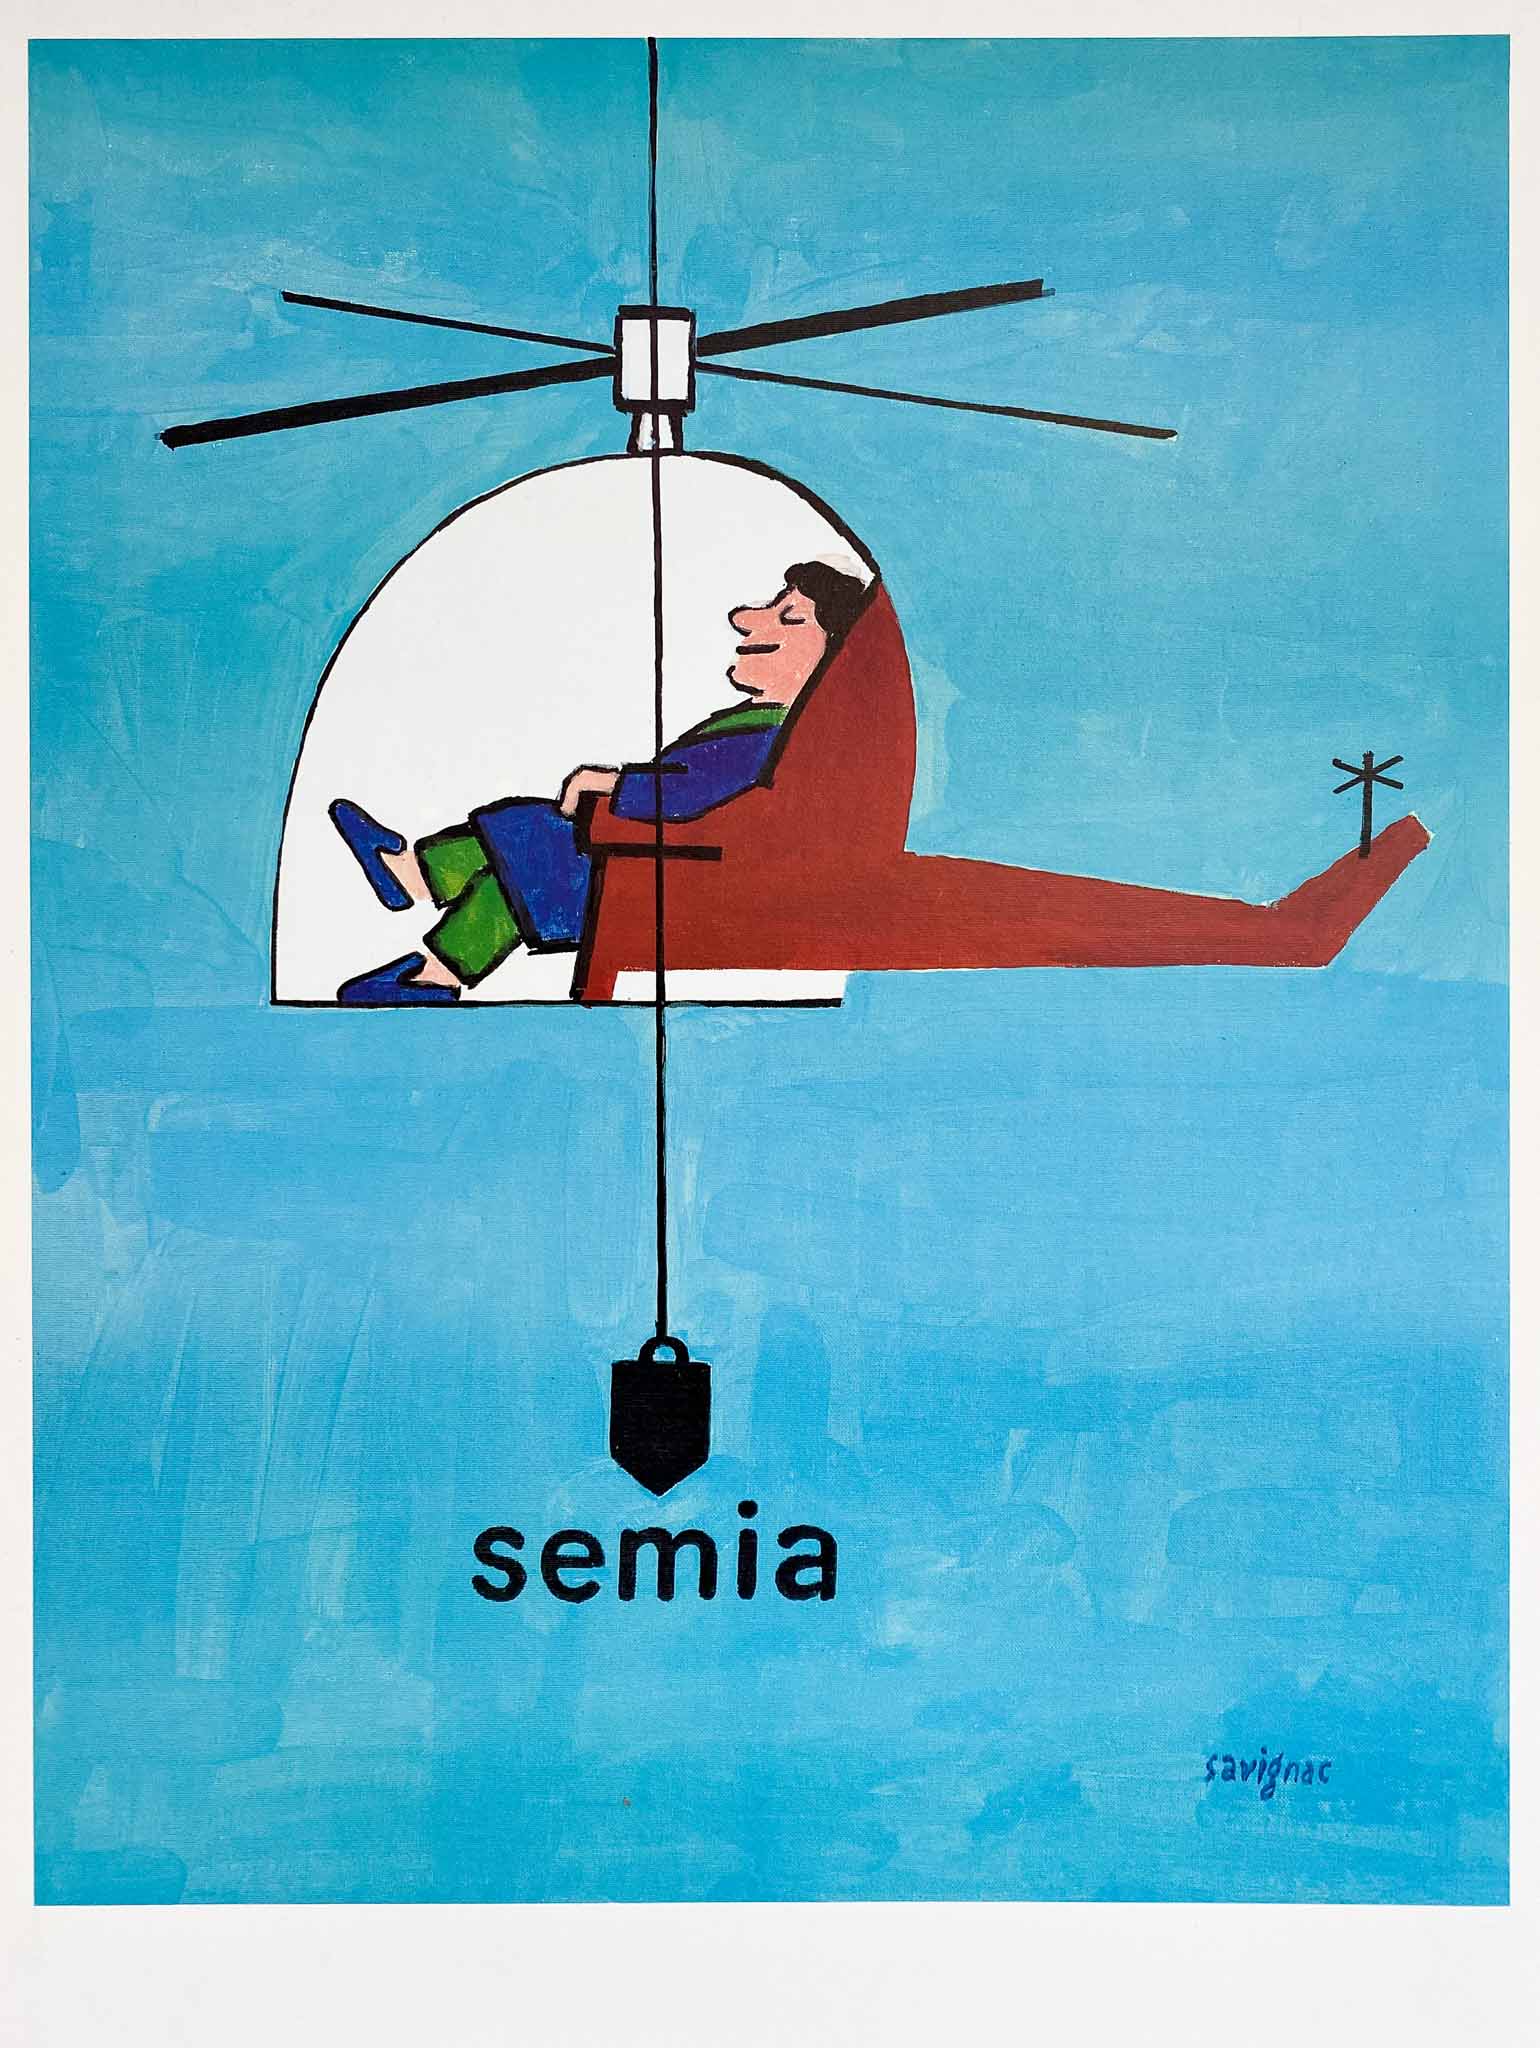  Affiche Vintage Semia - Raymond Savignac 1997    Affiche Humoristique, du célèbre affichiste Français, Raymond Savignac "Semia"     Savignac était une figure éminente de la scène de l'art et de l'affiche à Paris,  du milieu des années 50 jusqu'à sa mort en 2002.